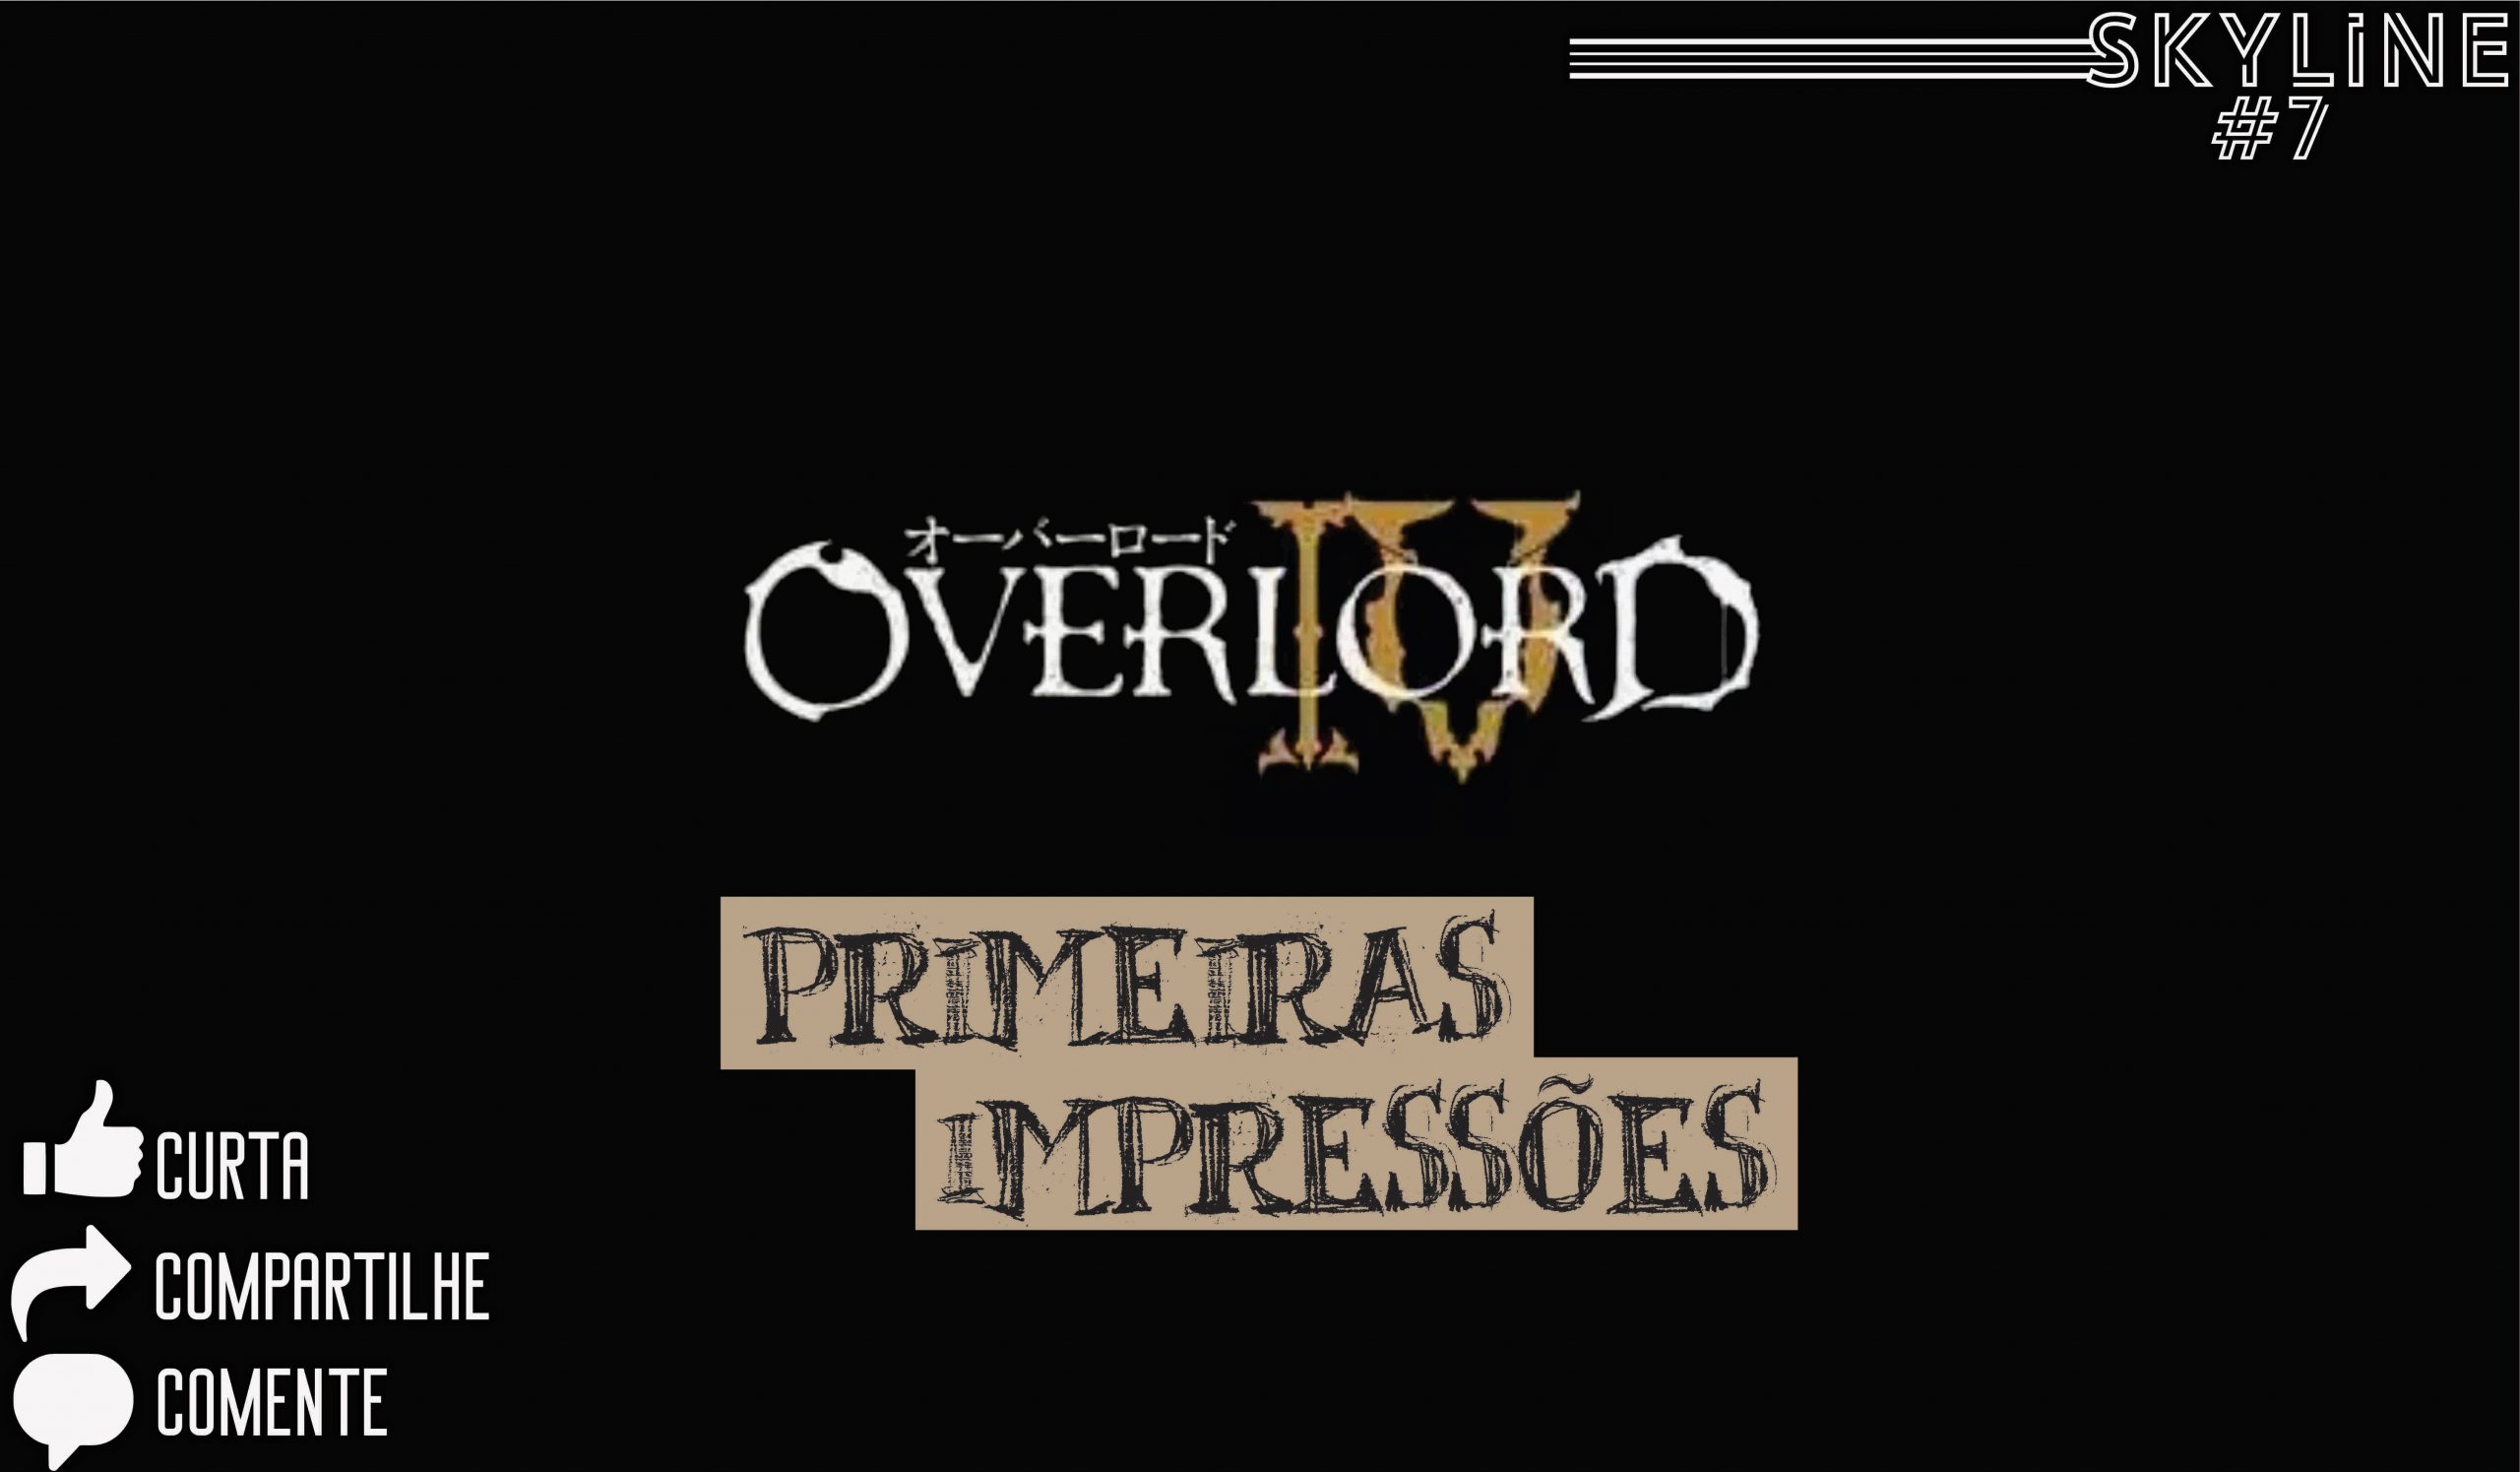 Análise de Overlord IV - Anime United